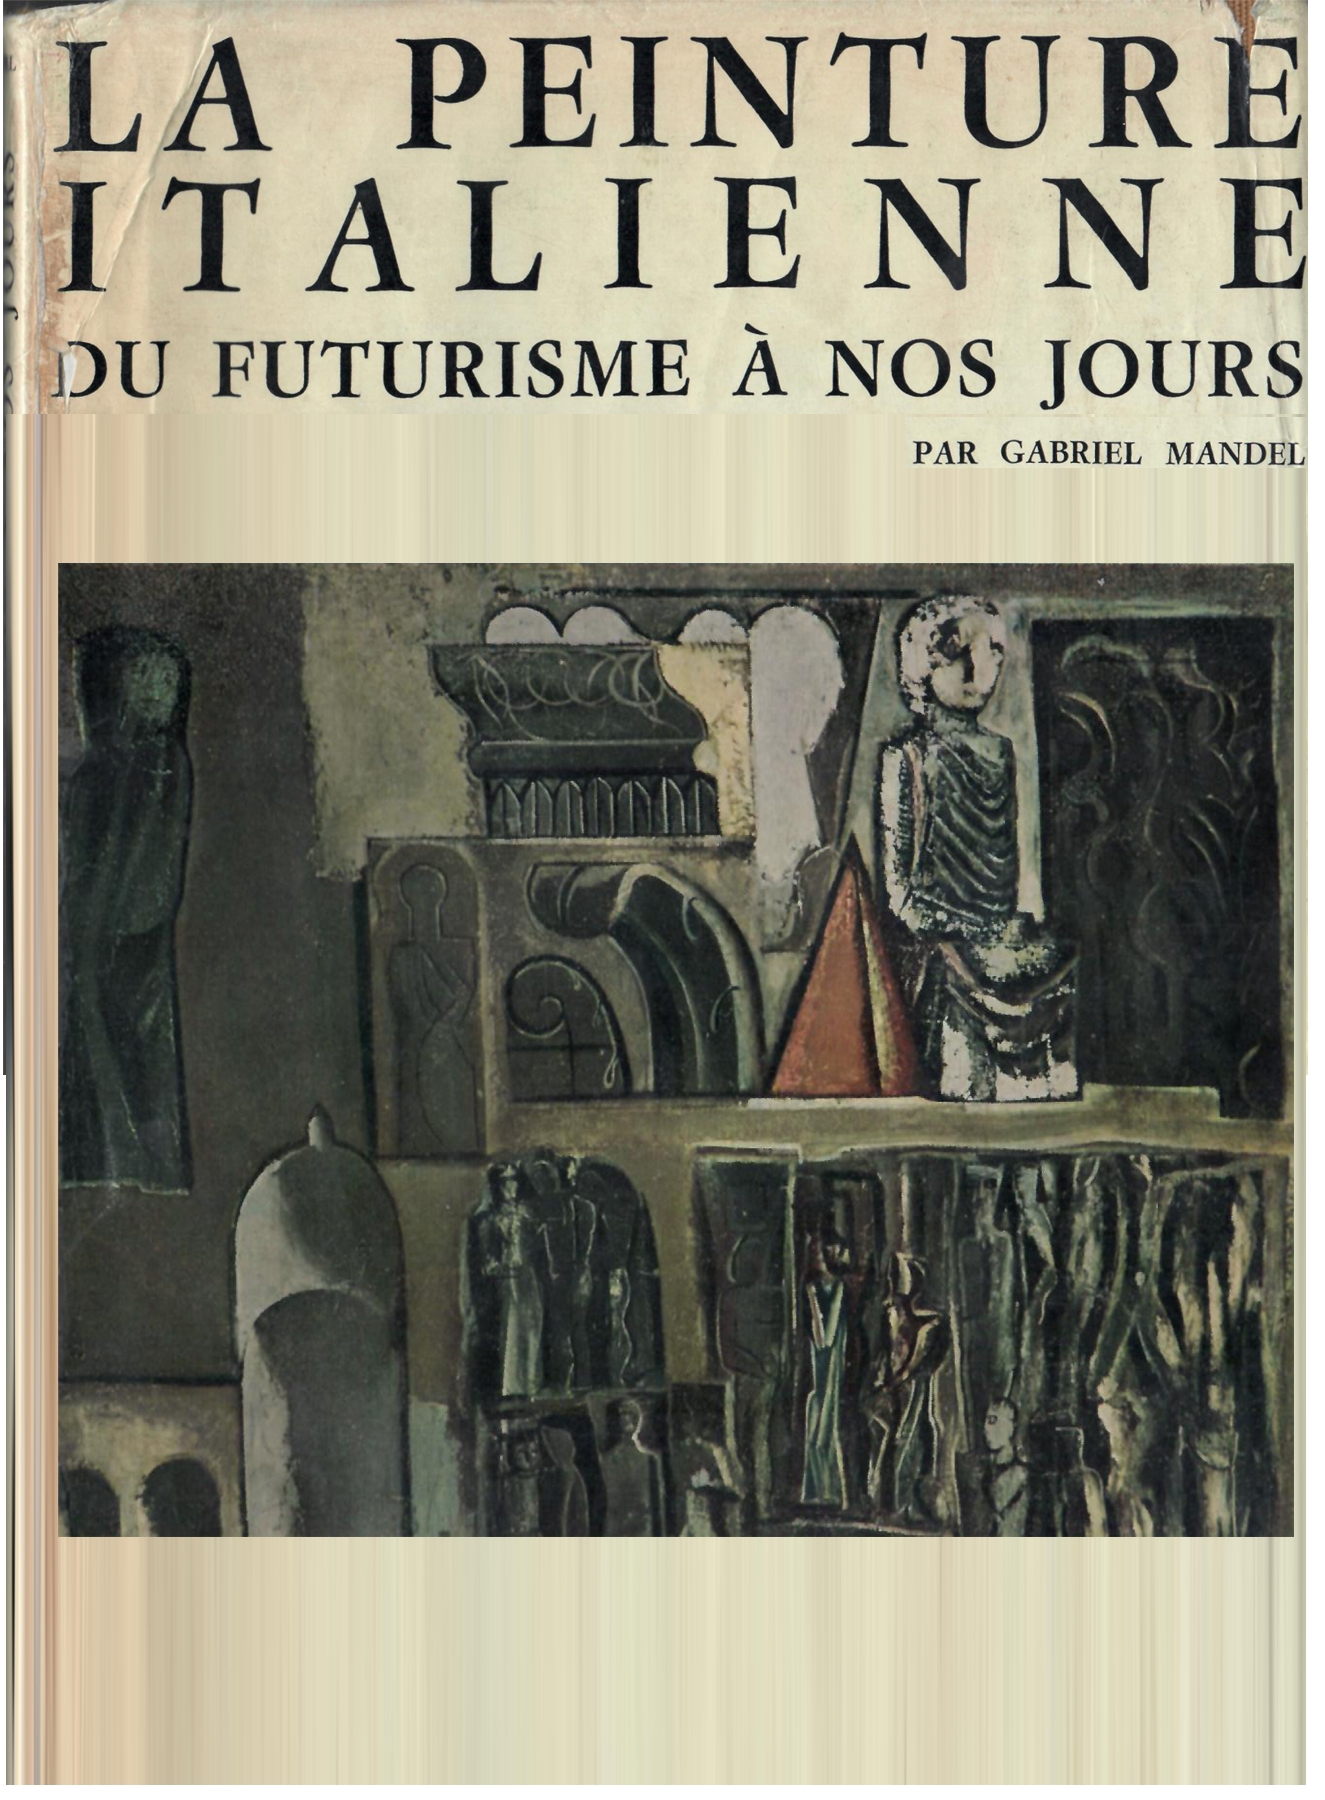  <b>Volume 'La Peinture Italienne du Futurisme a nos jours' del 1972 a pag. 500-501 </b>, dipinti di A. Bertrand  'Figure' ed ' Invito ad un dialogo' 